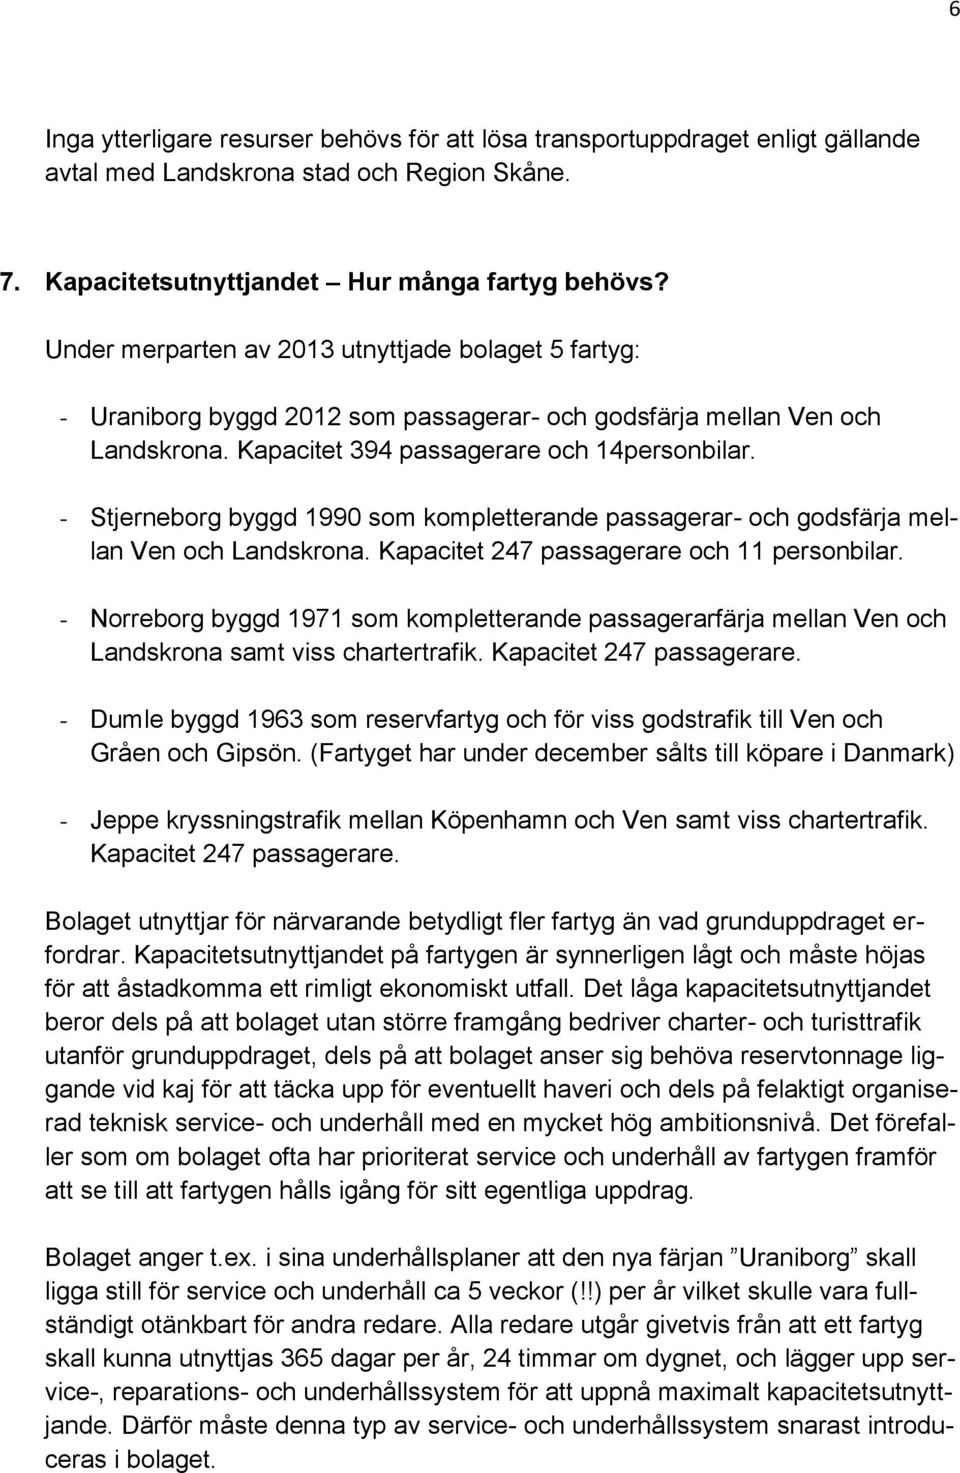 - Stjerneborg byggd 1990 som kompletterande passagerar- och godsfärja mellan Ven och Landskrona. Kapacitet 247 passagerare och 11 personbilar.